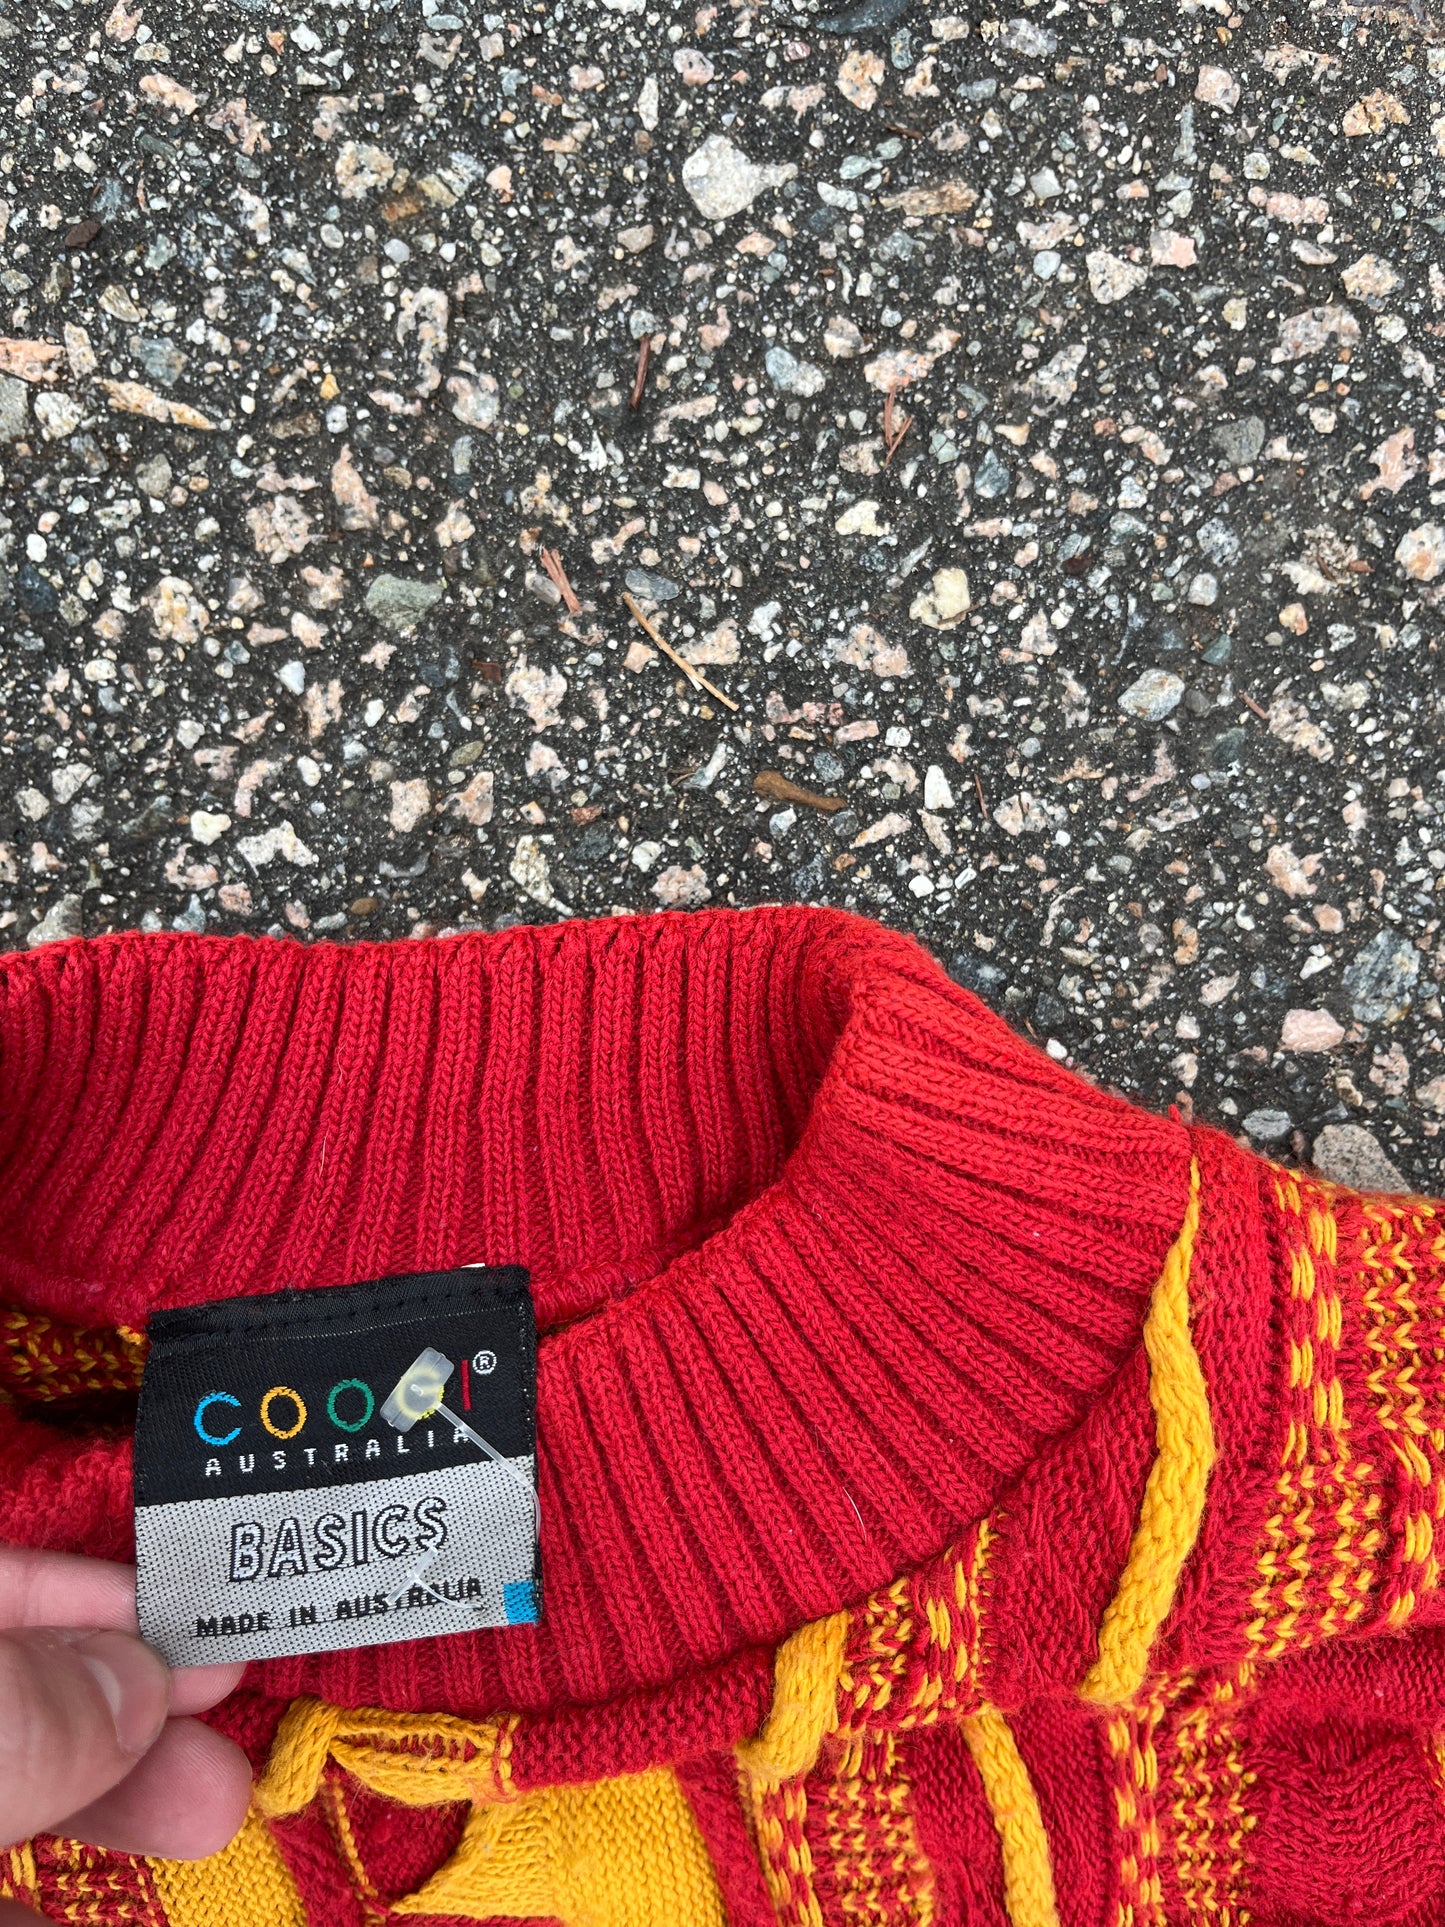 Vintage Coogi 3D Knit Cotton Sweater - Large